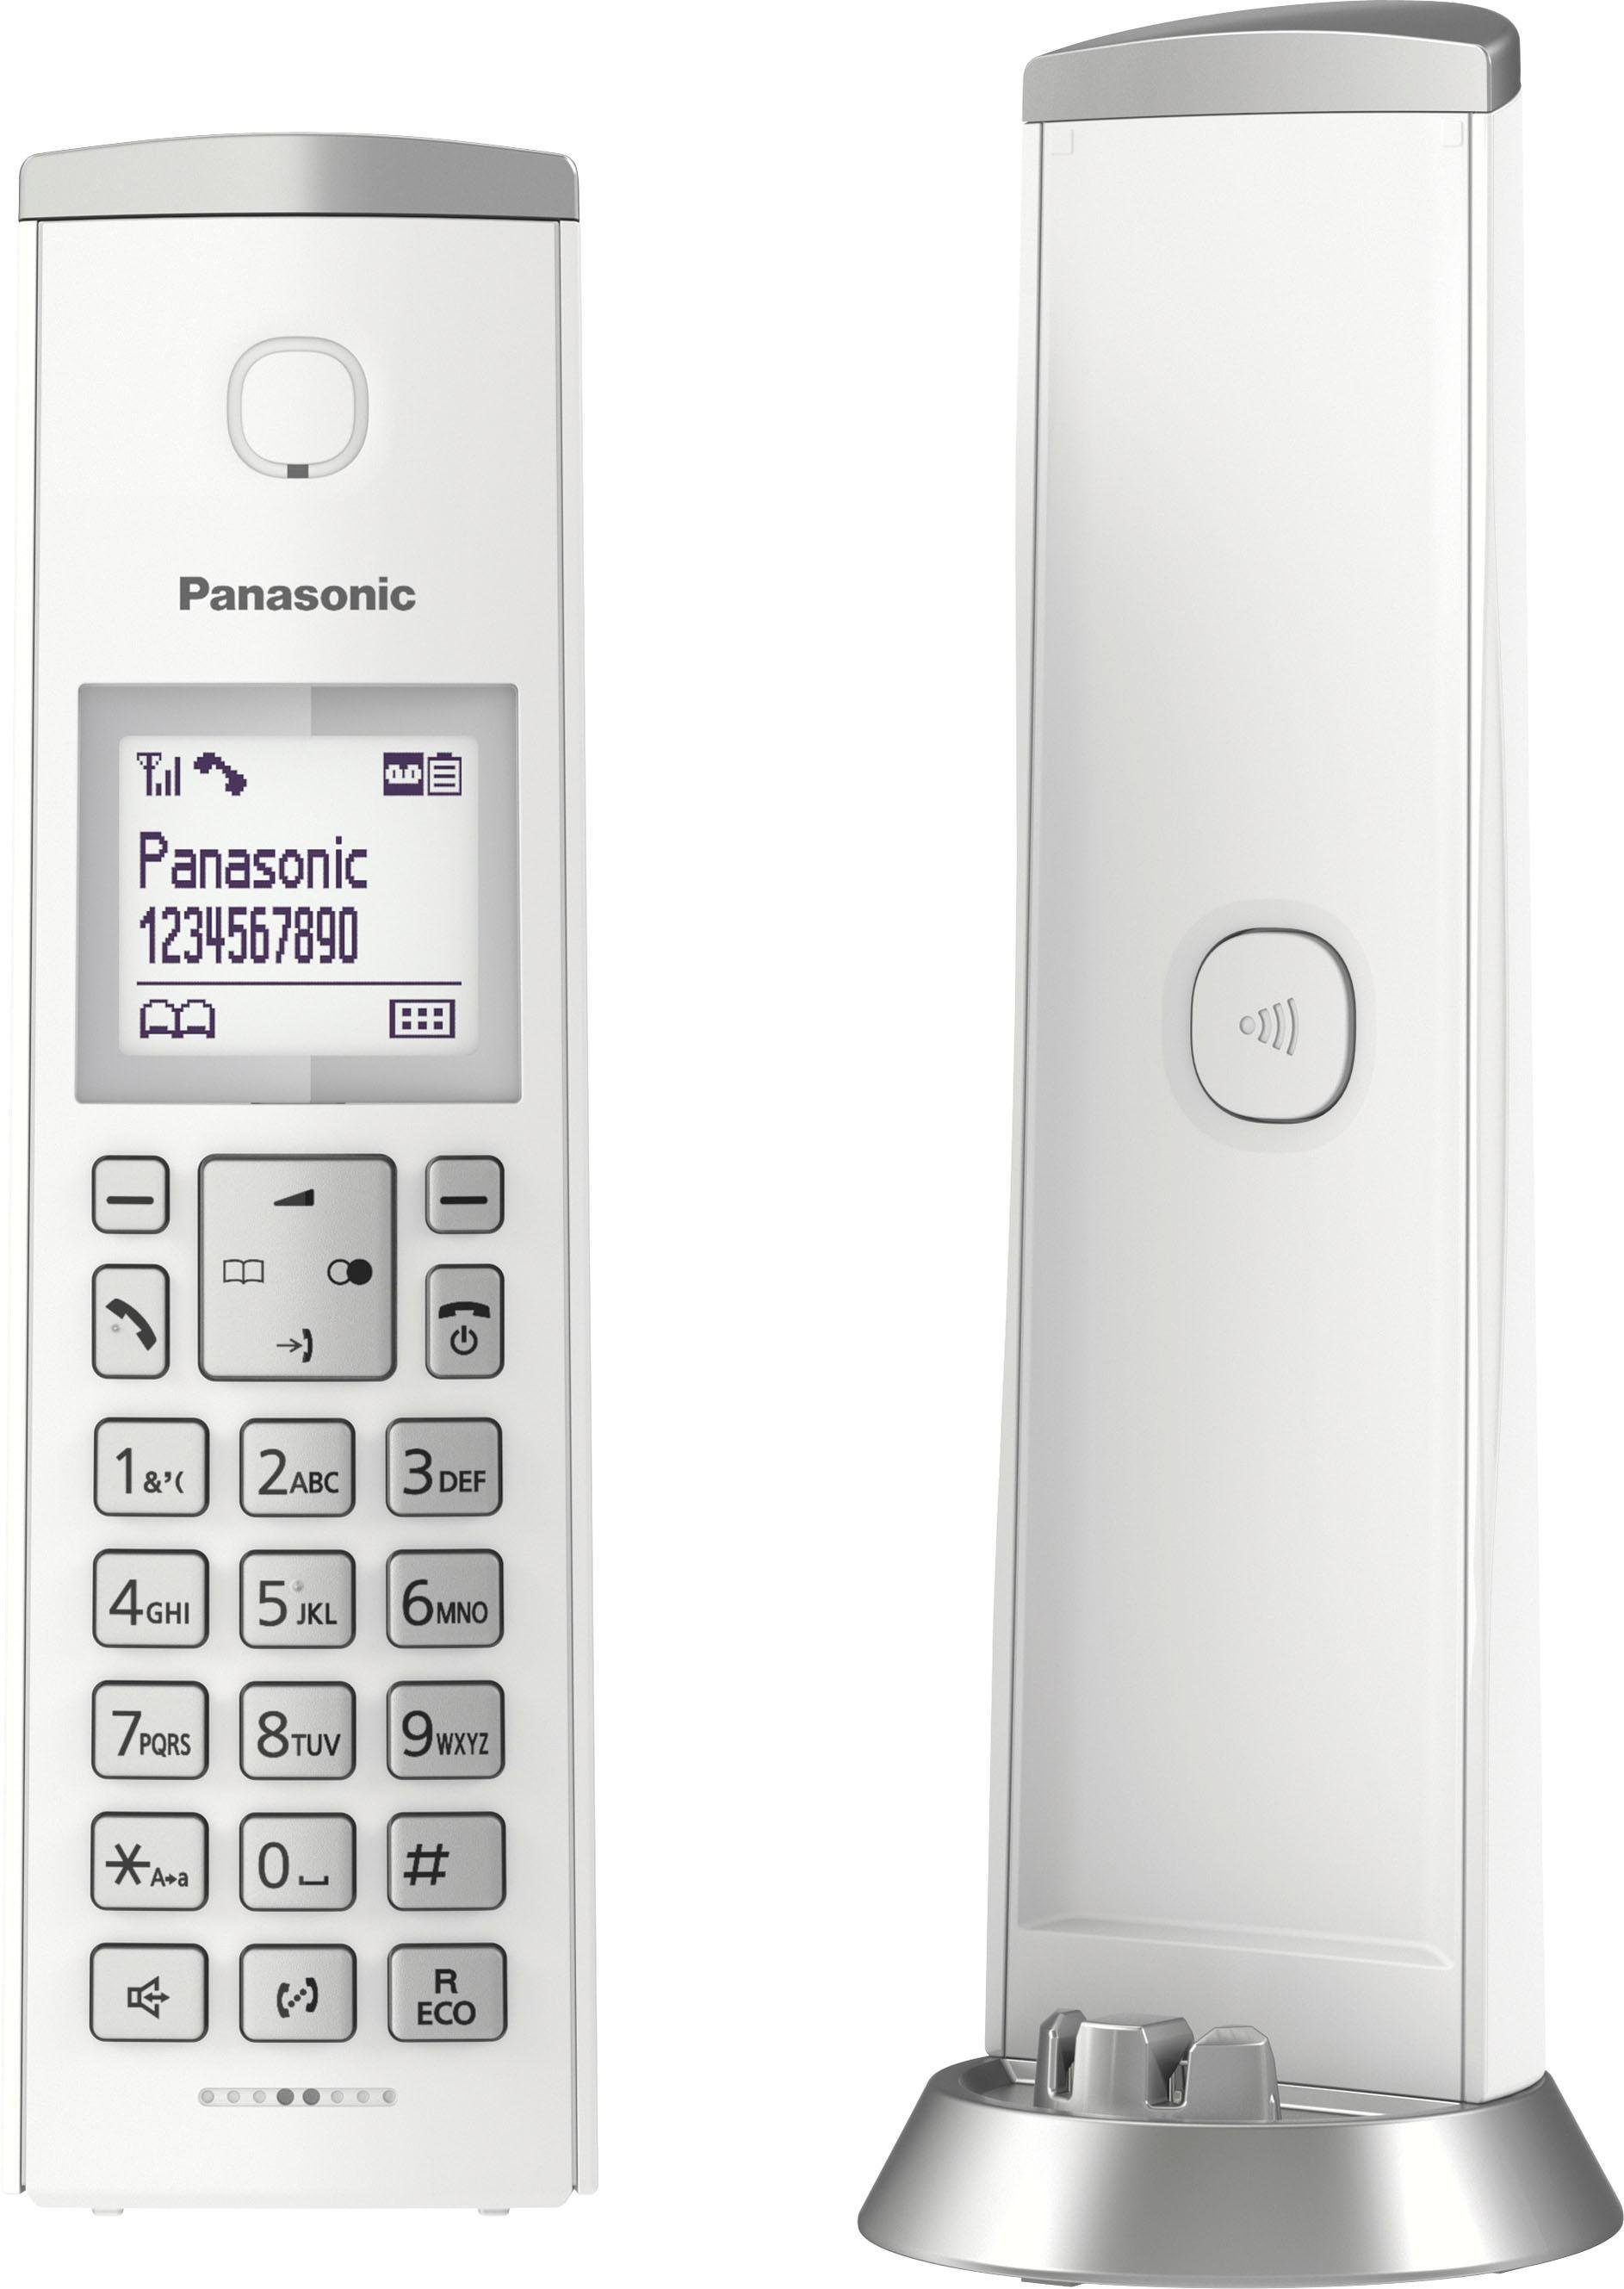 Schnurloses (Mobilteile: Panasonic Navigationstaste) Wege 4 weiß/silberfarben KX-TGK220 DECT-Telefon 1,